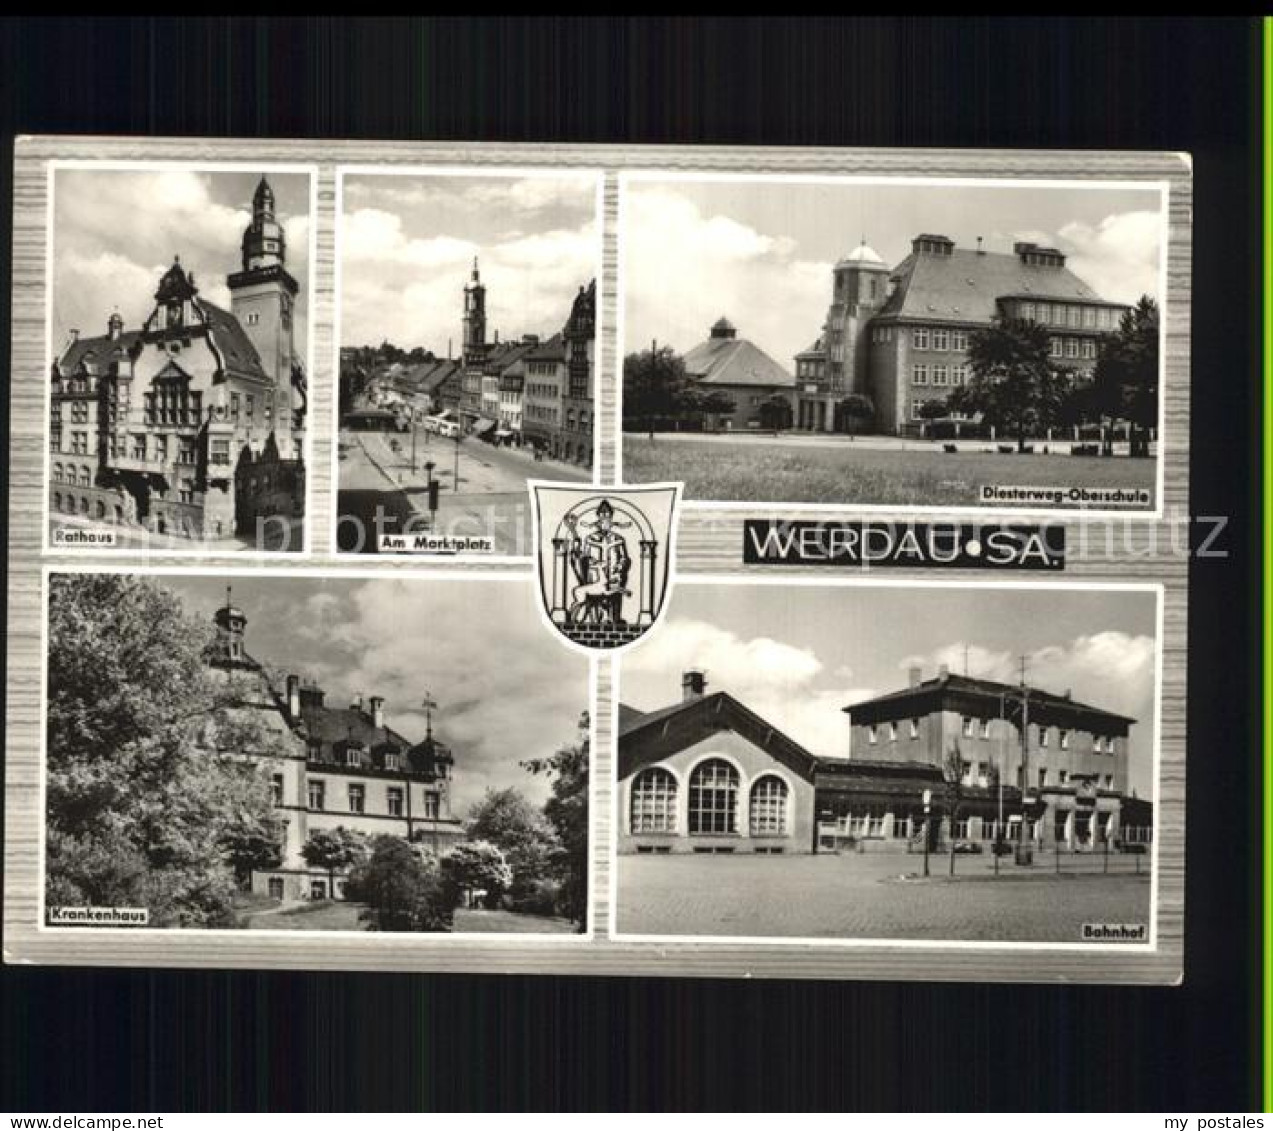 72430588 Werdau Sachsen Rathaus Marktplatz Diesterweg Oberschule Bahnhof Kranken - Werdau